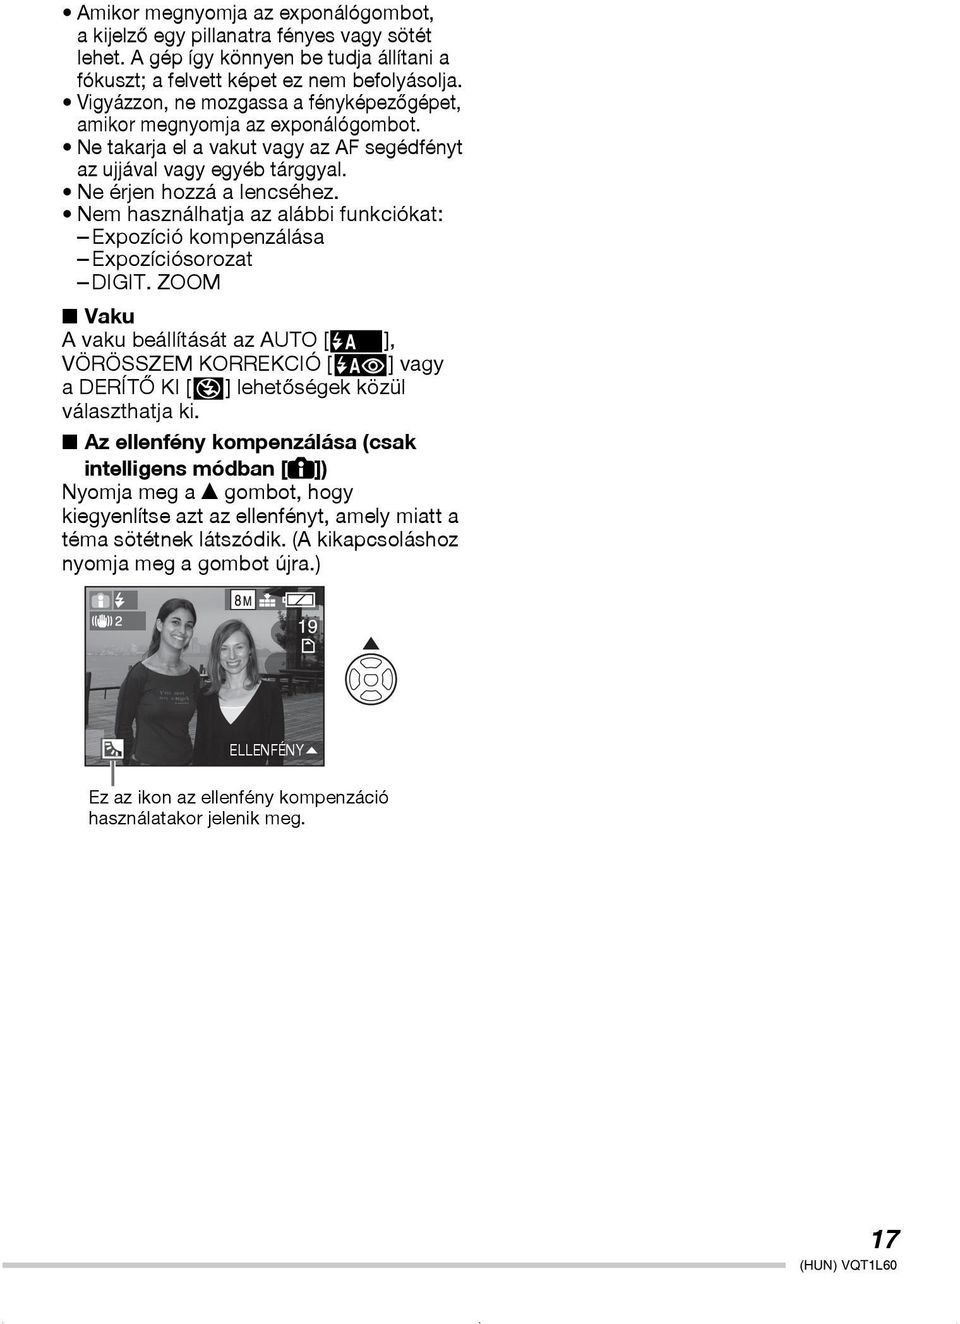 Alapvetõ mûveletek Használati utasítás Digitális fényképezõgép - PDF  Ingyenes letöltés